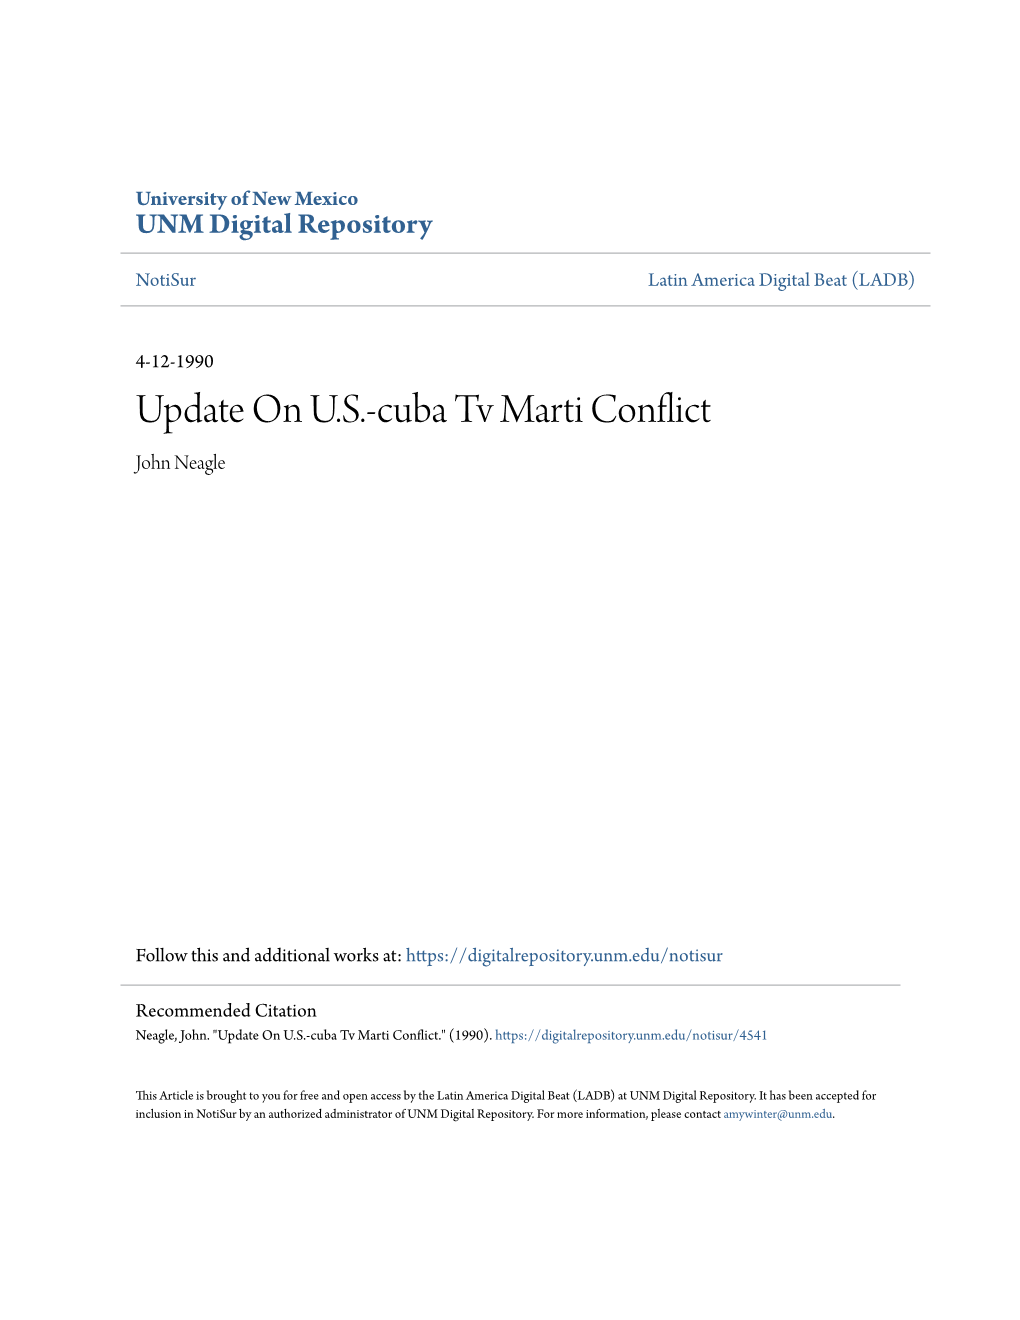 Update on U.S.-Cuba Tv Marti Conflict John Neagle